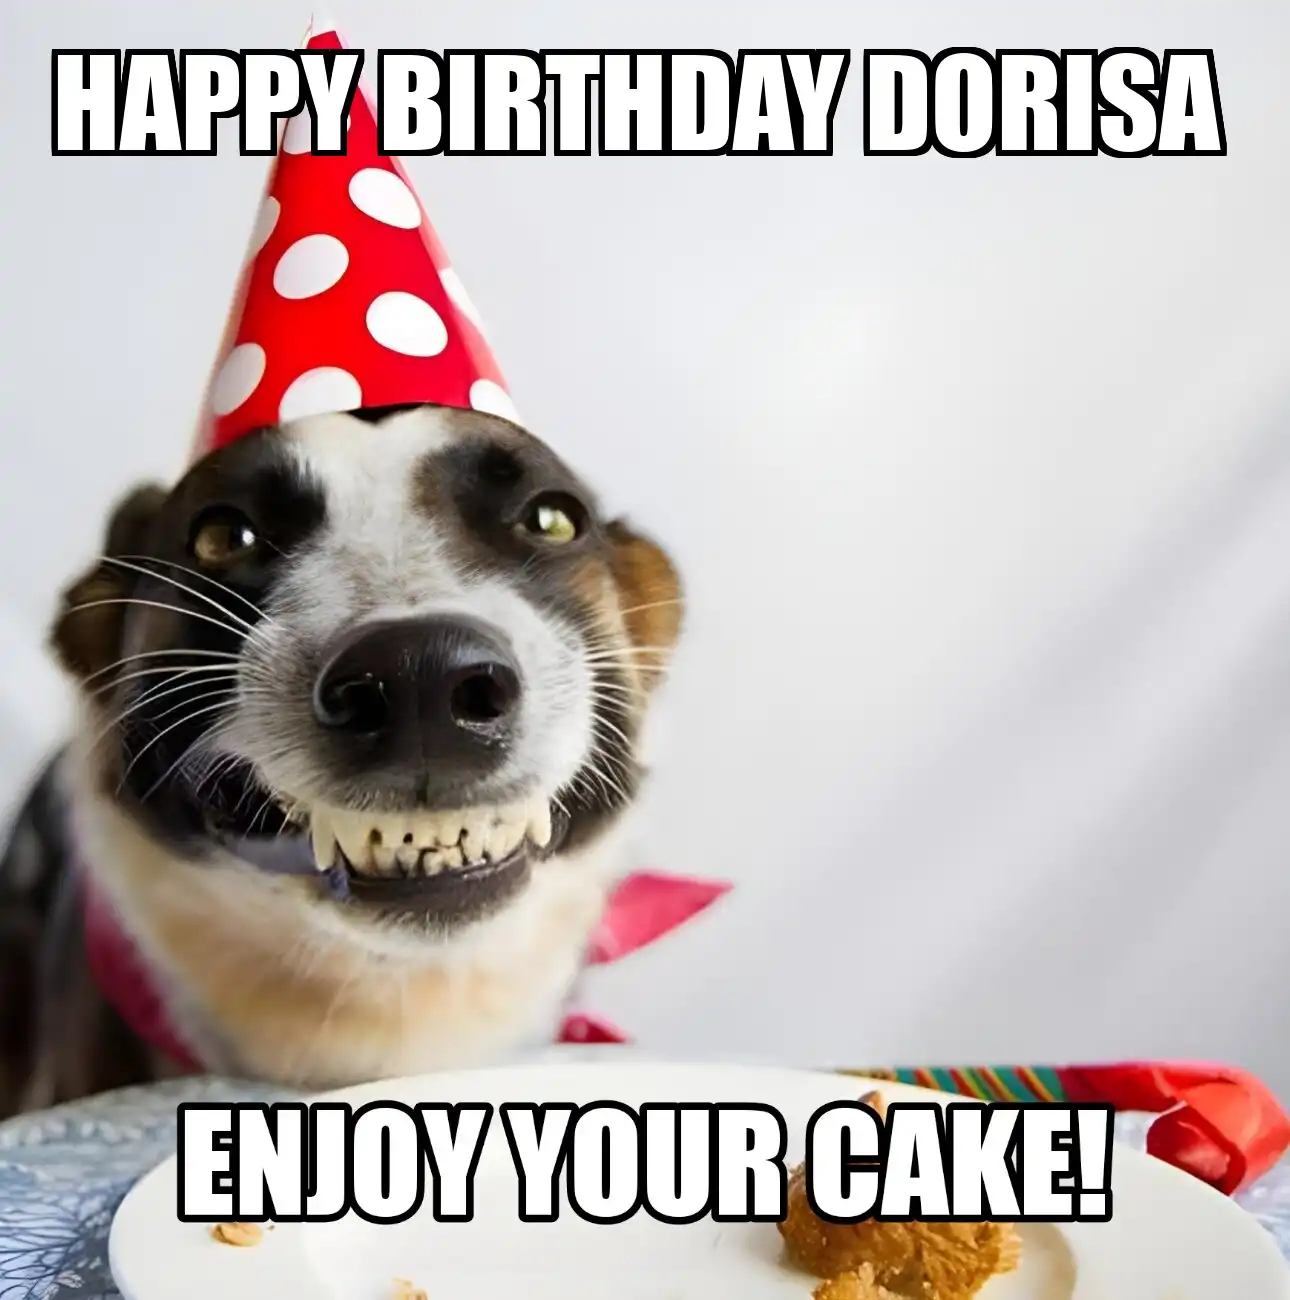 Happy Birthday Dorisa Enjoy Your Cake Dog Meme